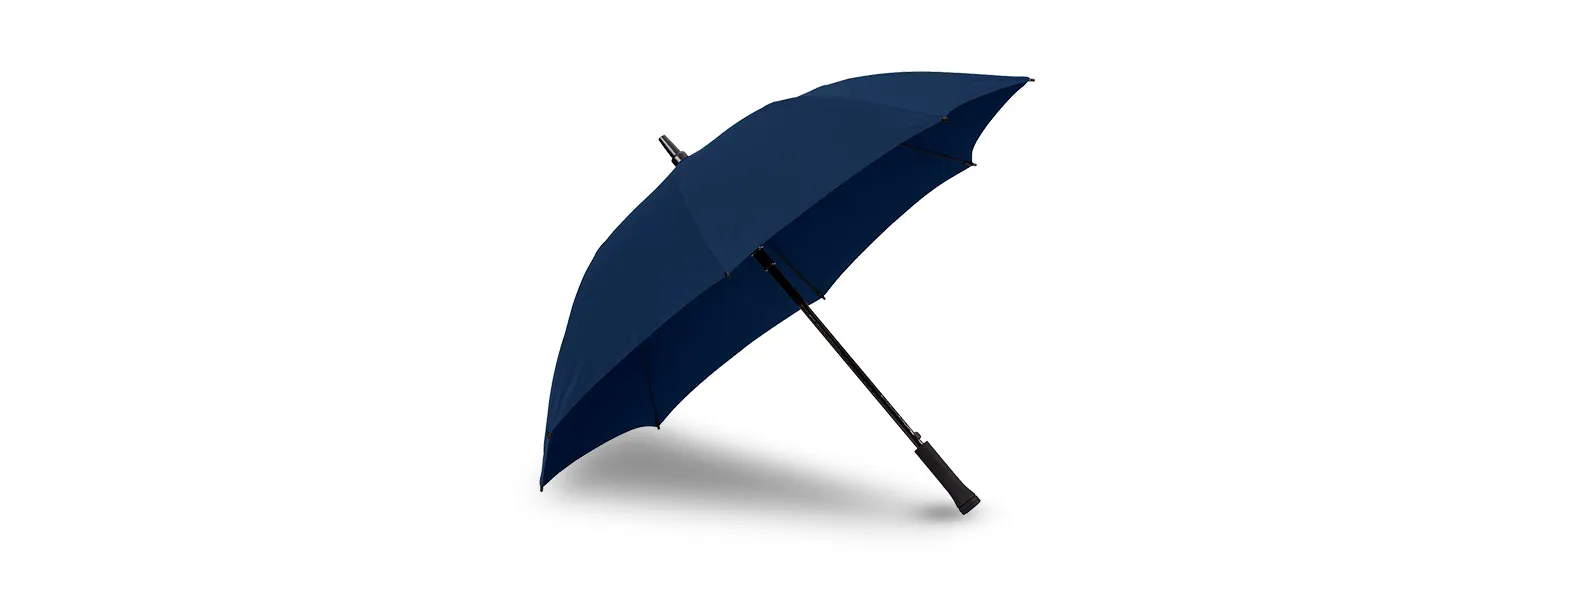 Guarda-chuva em Seda Sintética azul marinho automático com haste em Fibra de Vidro 14mm e empunhadura reta em ABS.